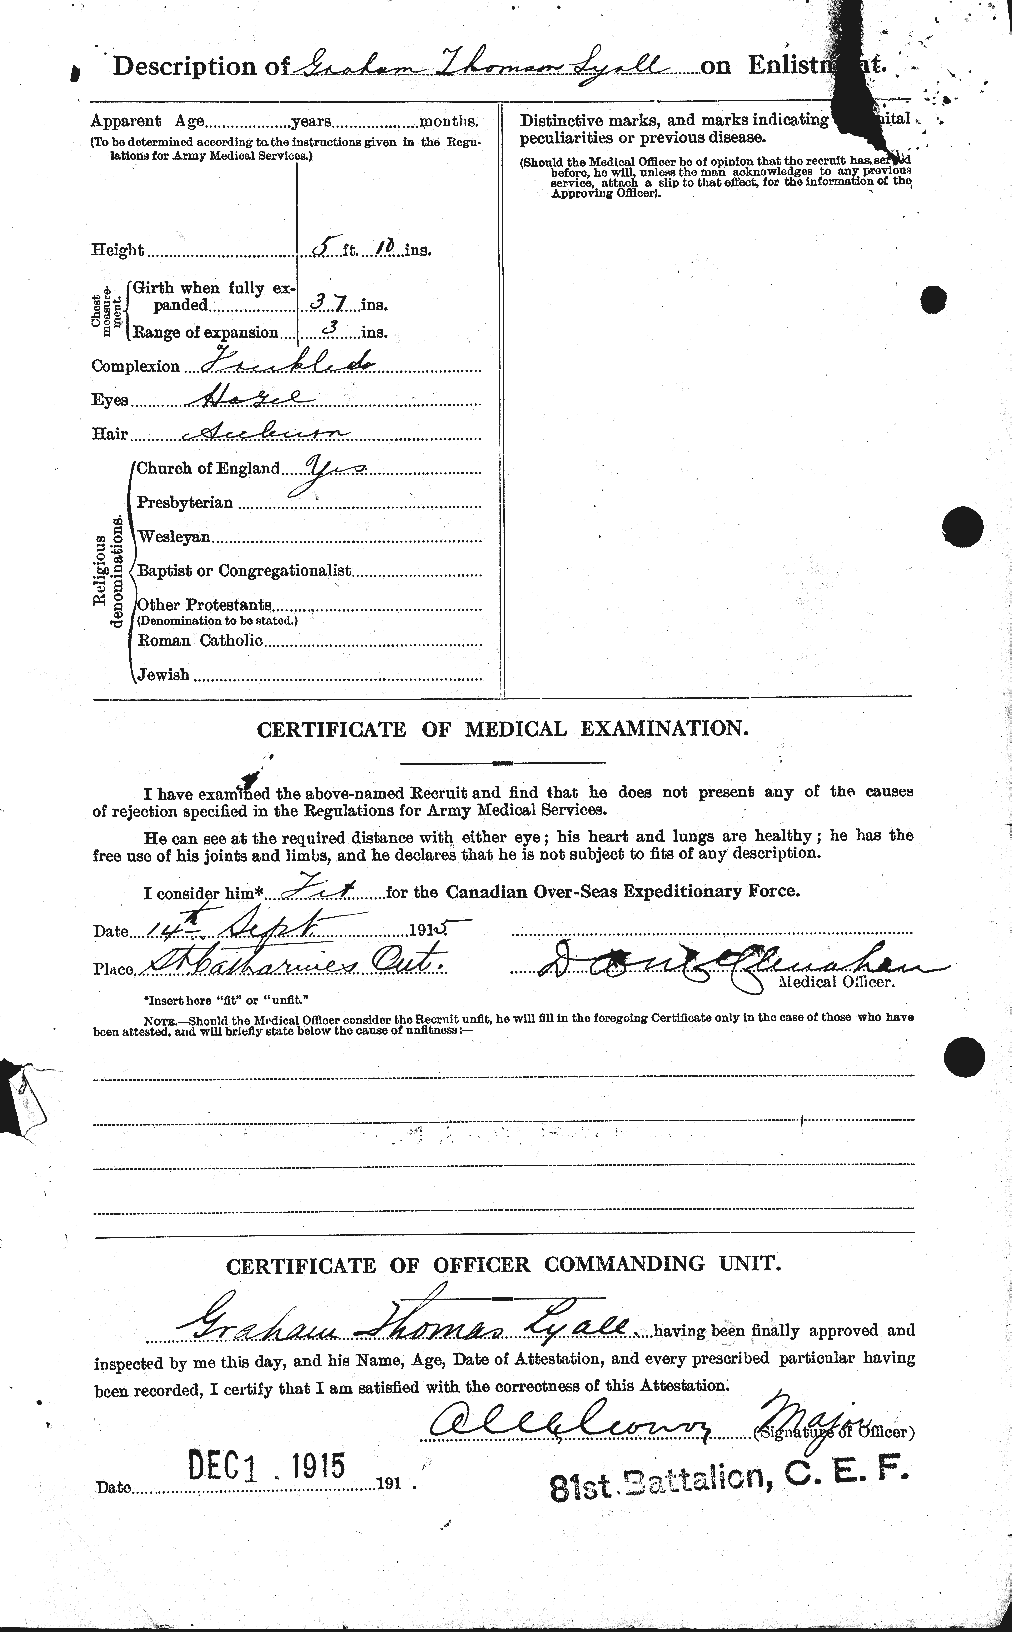 Dossiers du Personnel de la Première Guerre mondiale - CEC 471663b